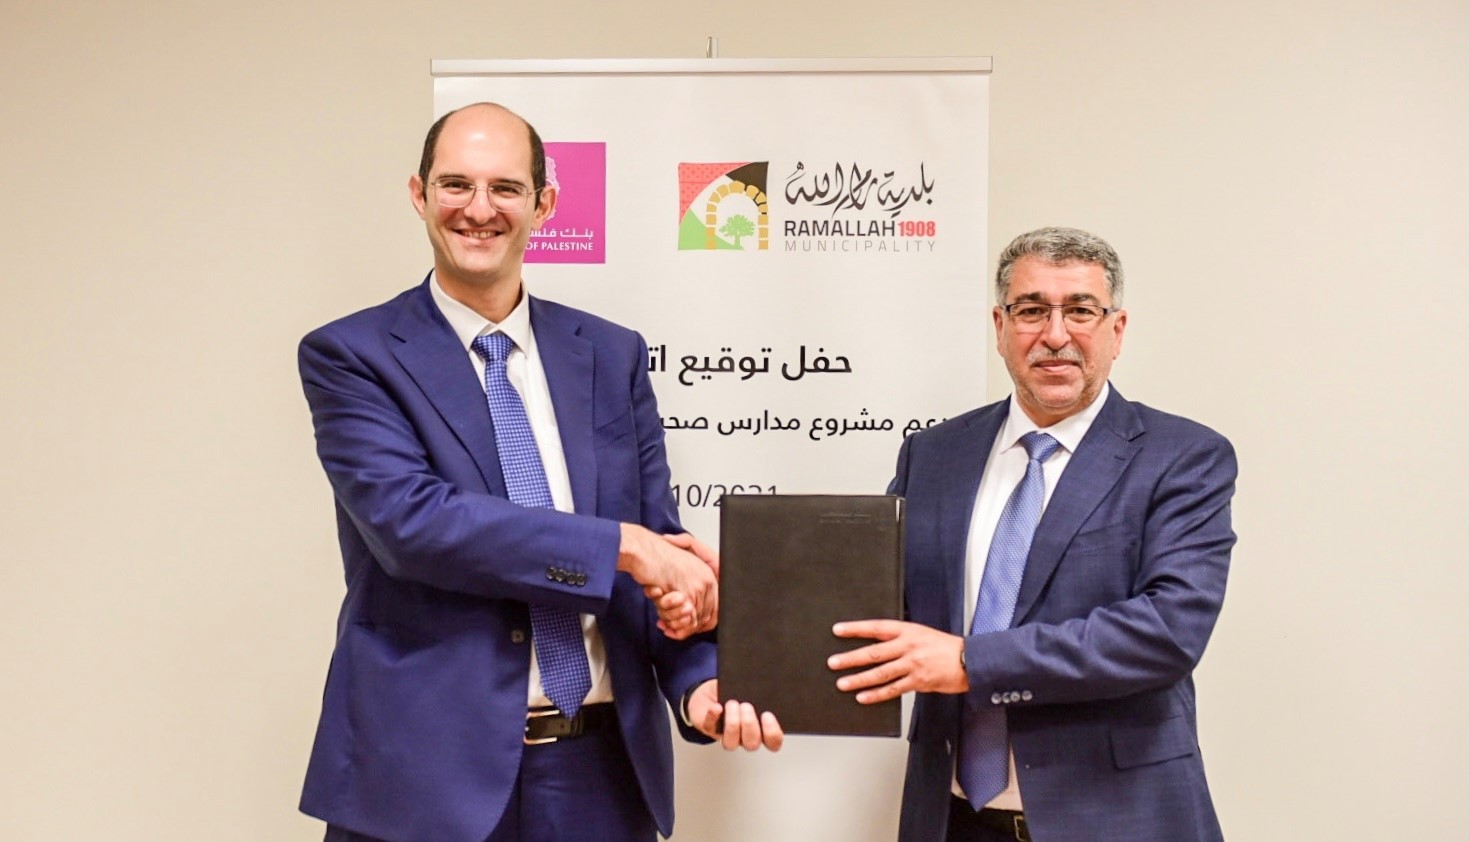 بنك فلسطين يوقع اتفاقية مع بلدية رام الله لتنفيذ مشروع التوعية البيئية للعام الدراسي  2